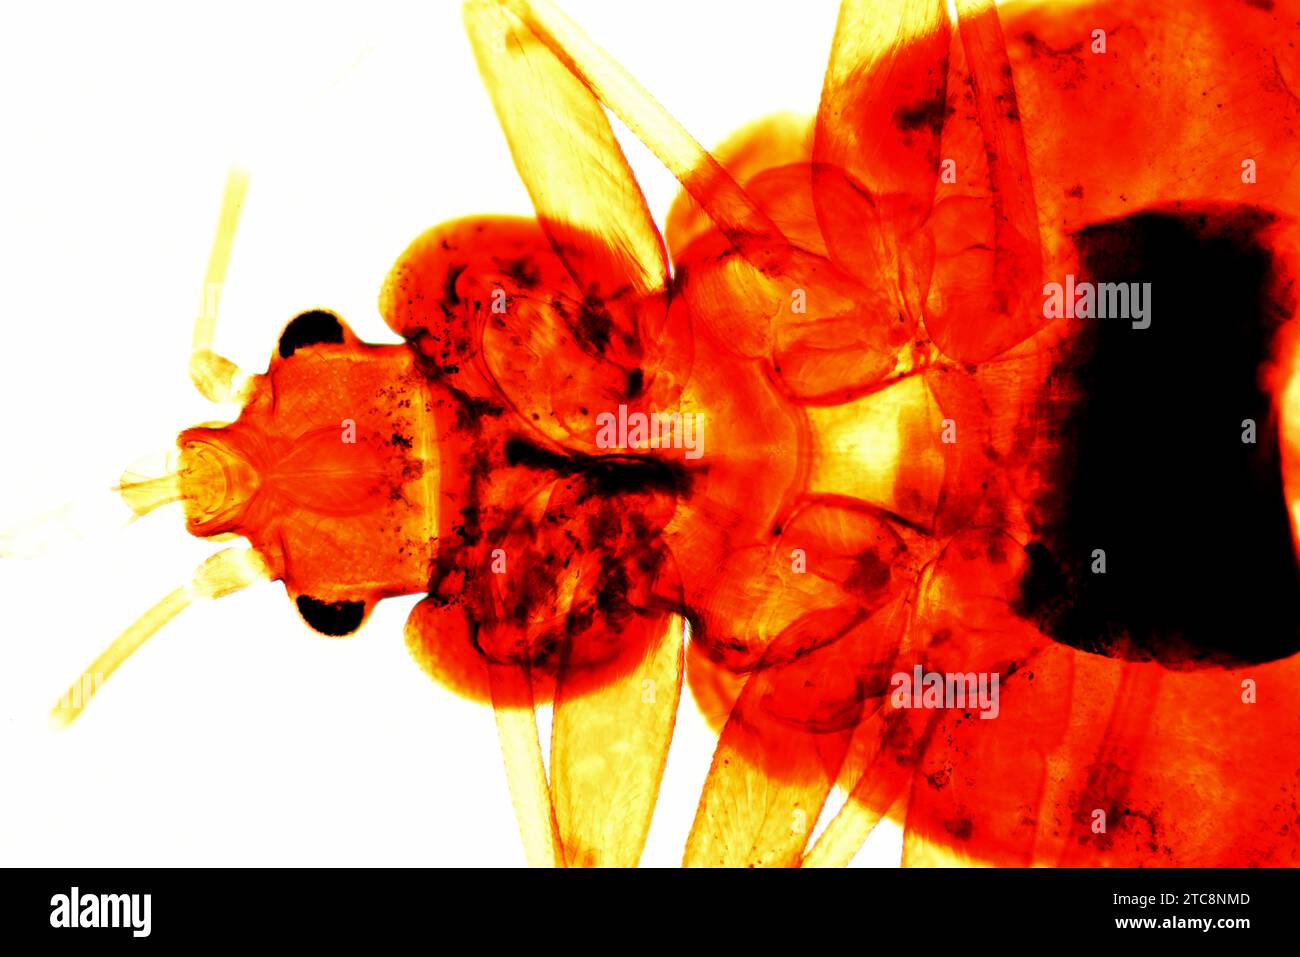 La cimice comune (Cimex lectularius) è un insetto parassita che si nutre esclusivamente di sangue umano. È un vettore di malattia. Microscopio leggero X50 a 10 cm di larghezza Foto Stock